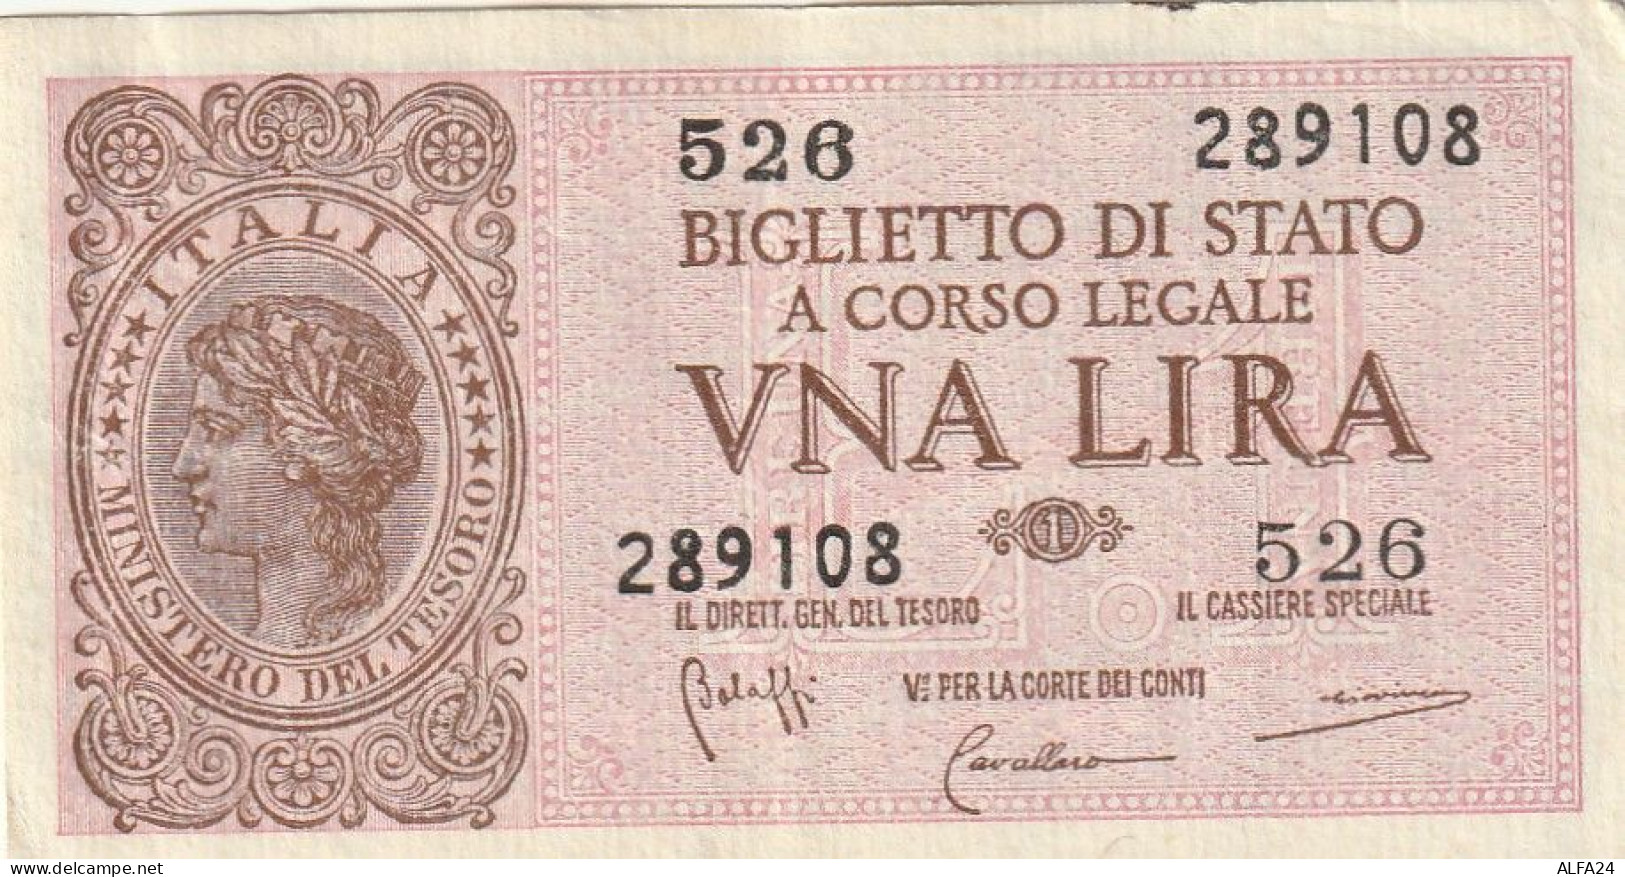 BANCONOTA BIGLIETTO DI STATO ITALIA 1 LIRA EF  (B_368 - Italië – 1 Lira